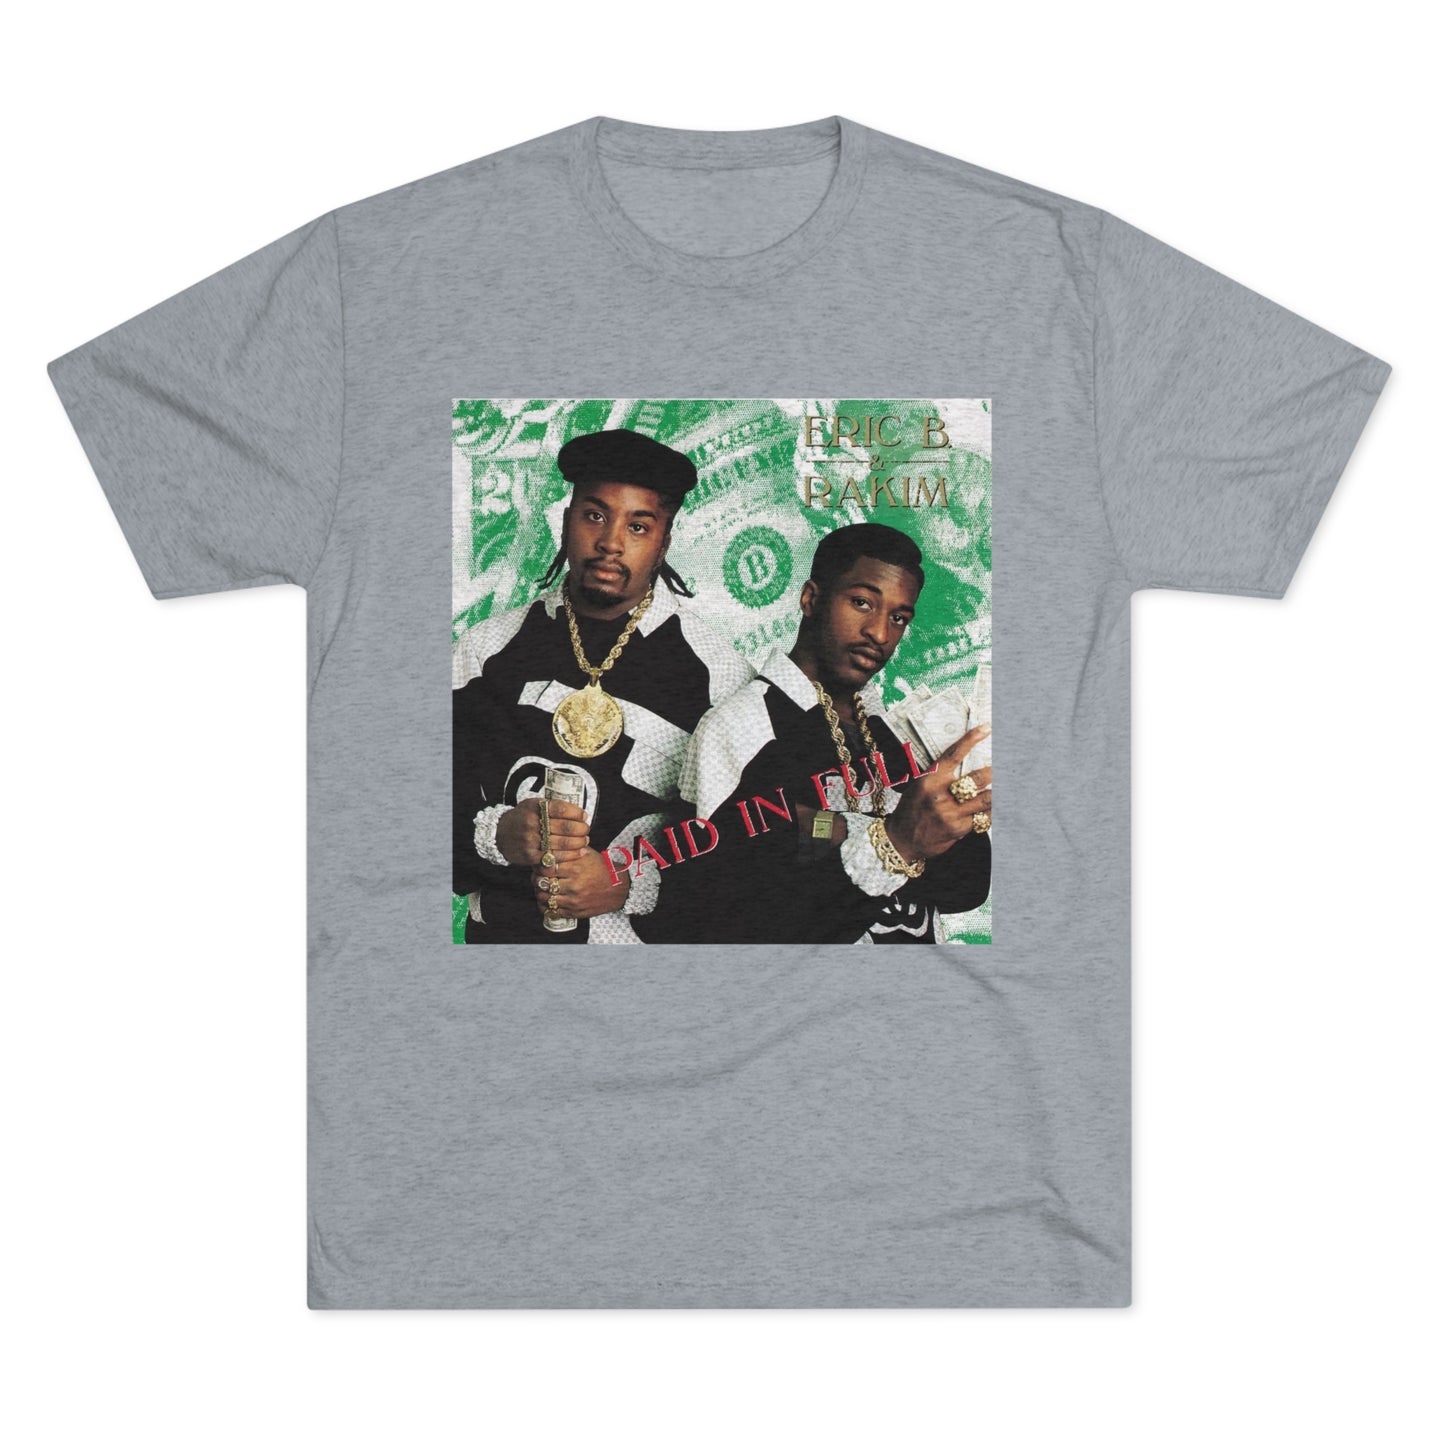 Classic Hip-Hop Vibes Tri-Blend T-Shirt - Inspired by Eric B. & Rakim